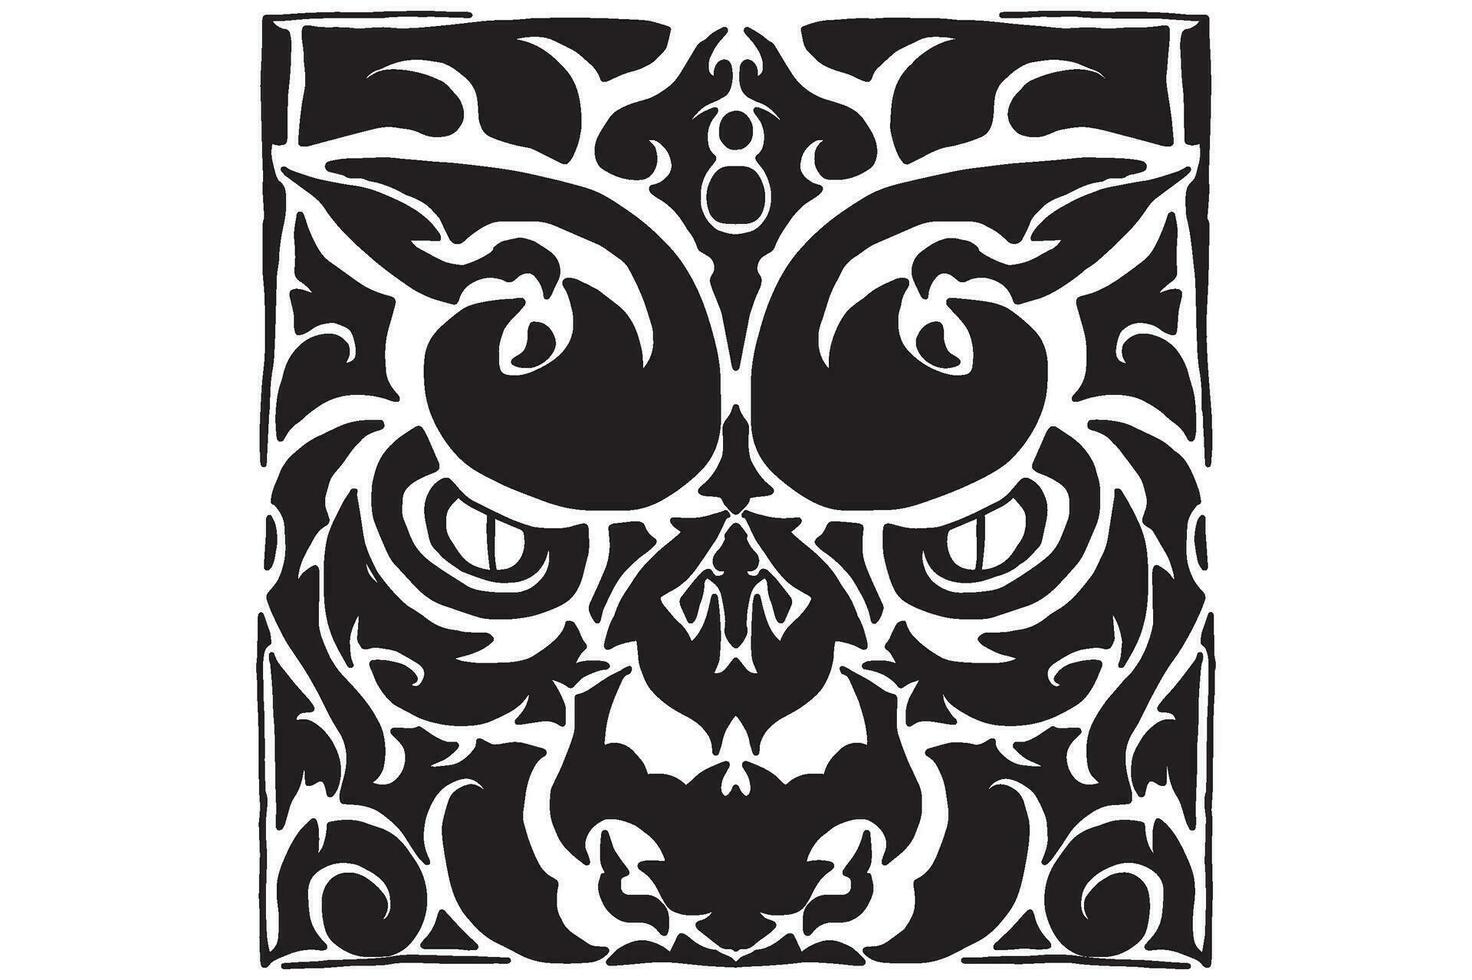 Platz Tiger Monster- Emblem tätowieren vektor